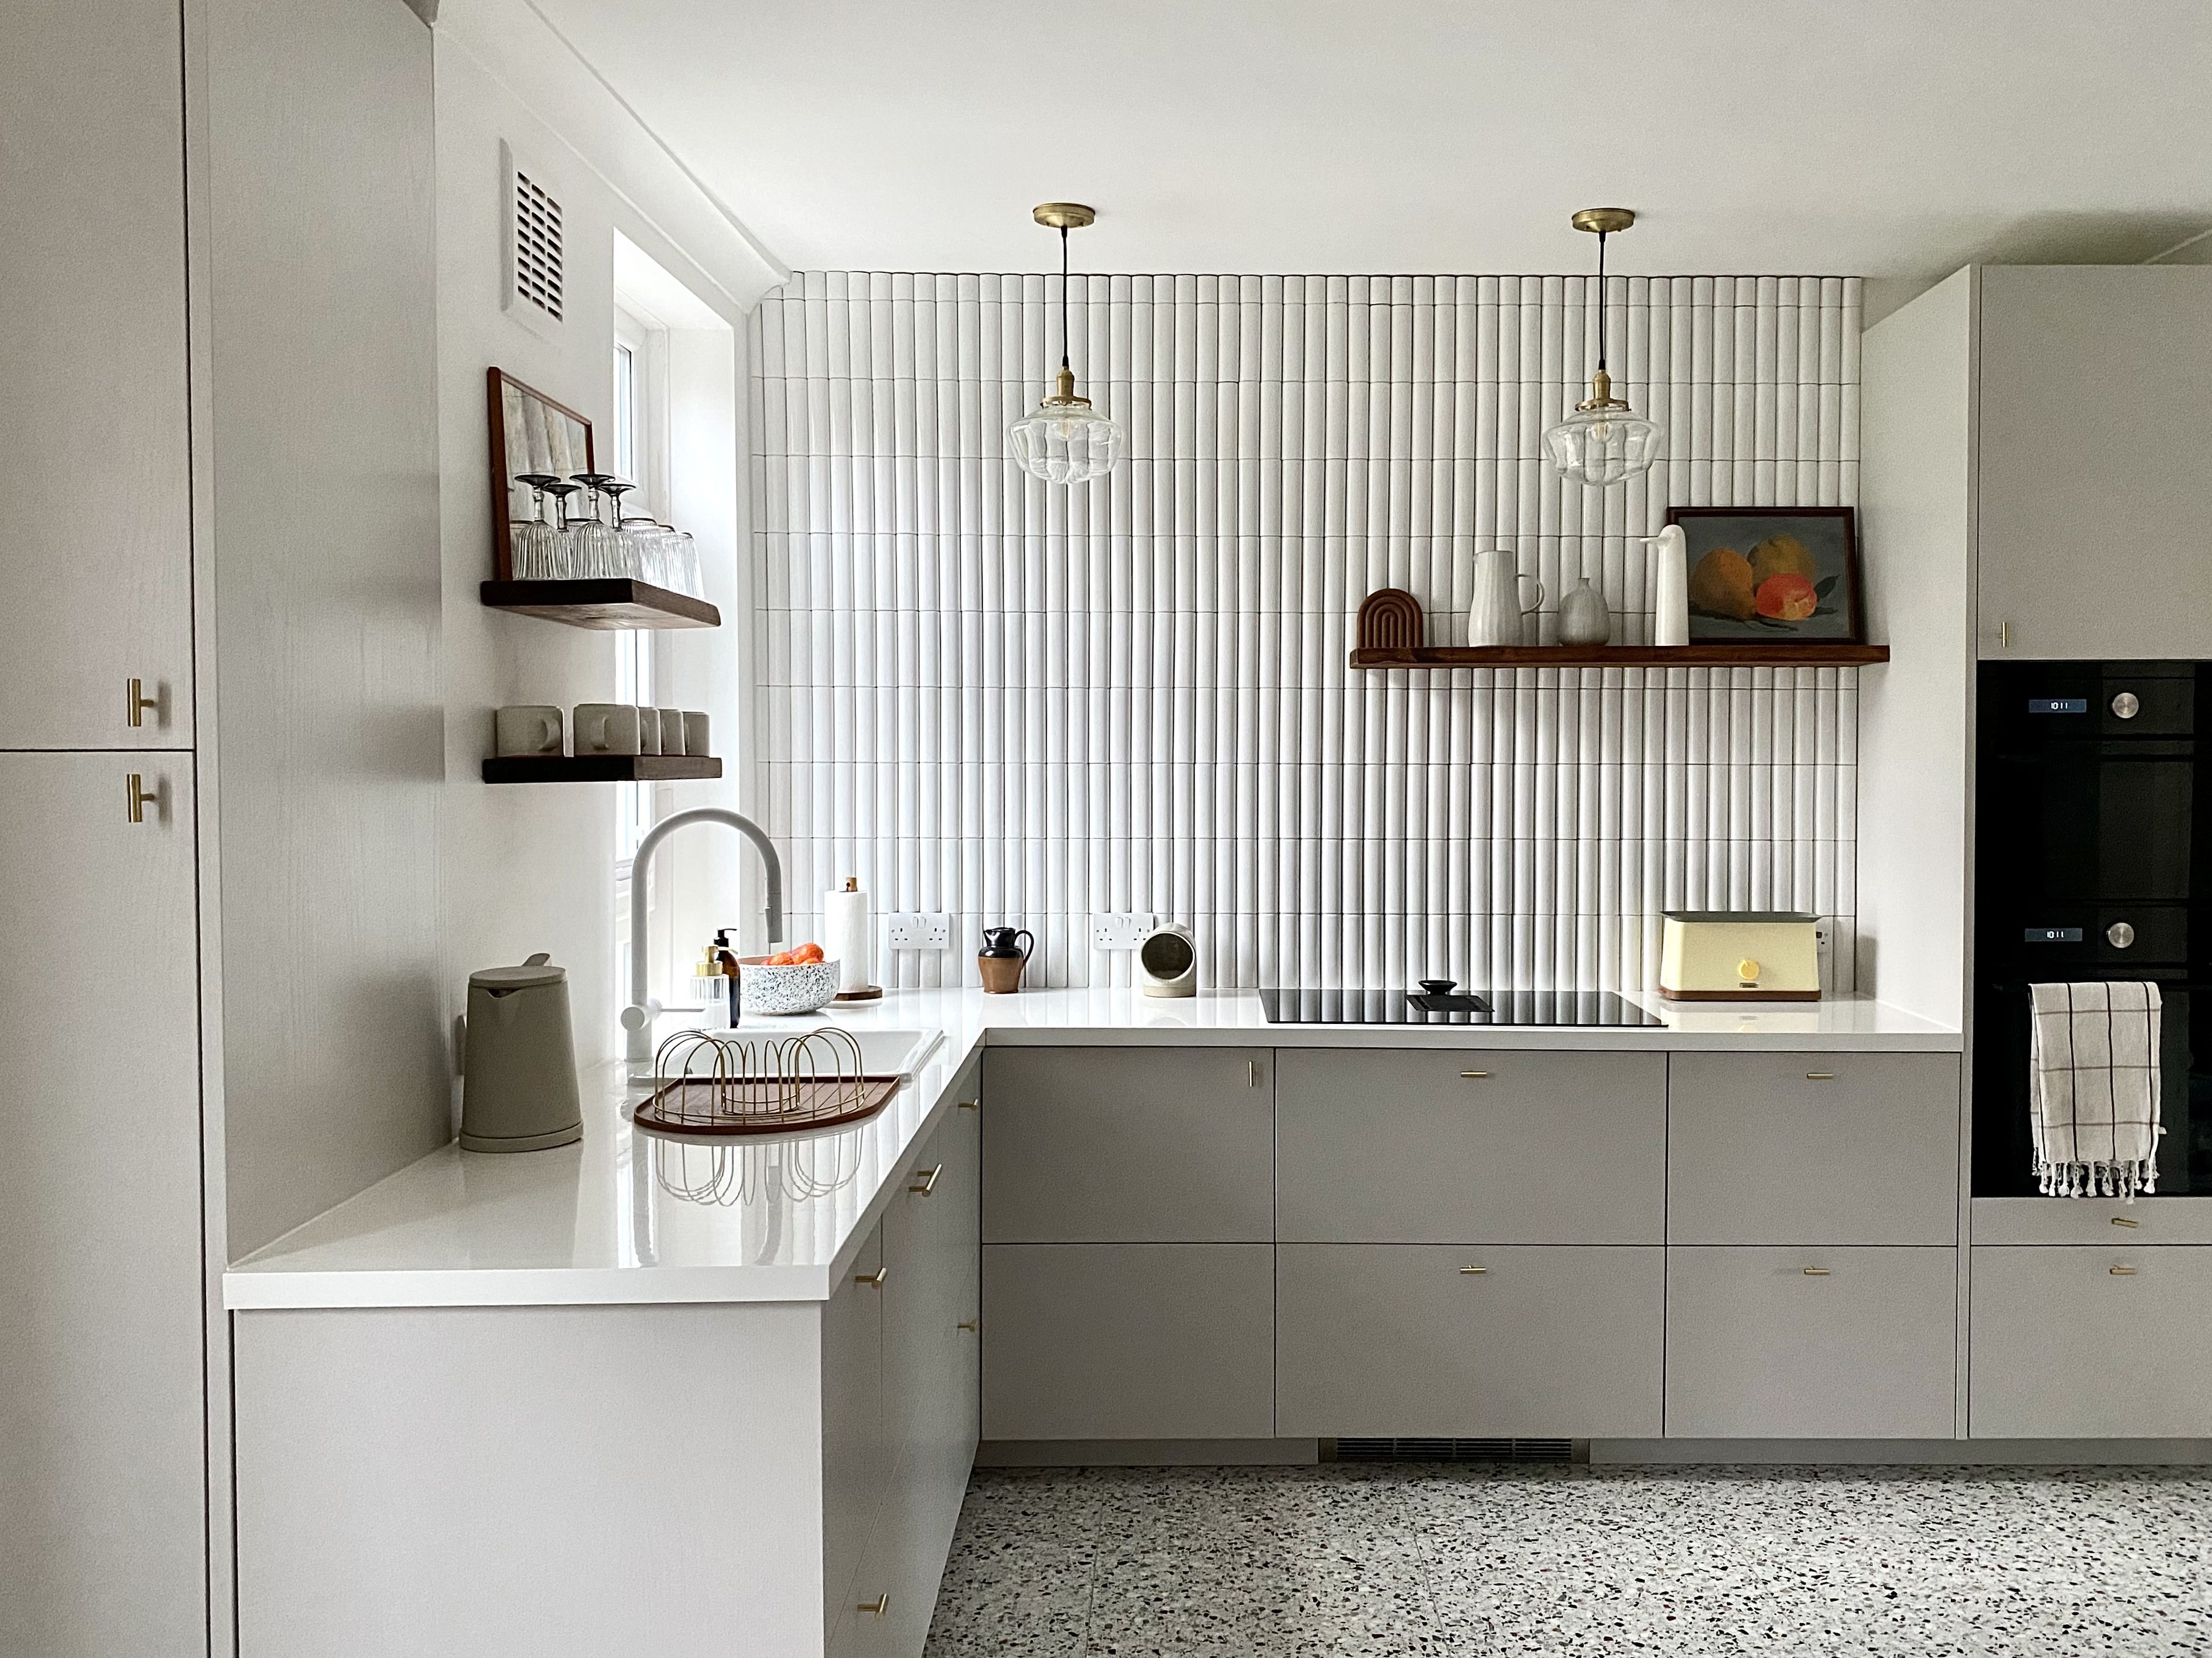 Solicitud Embotellamiento Sip Antes y después: una cocina que marca tendencia con los azulejos